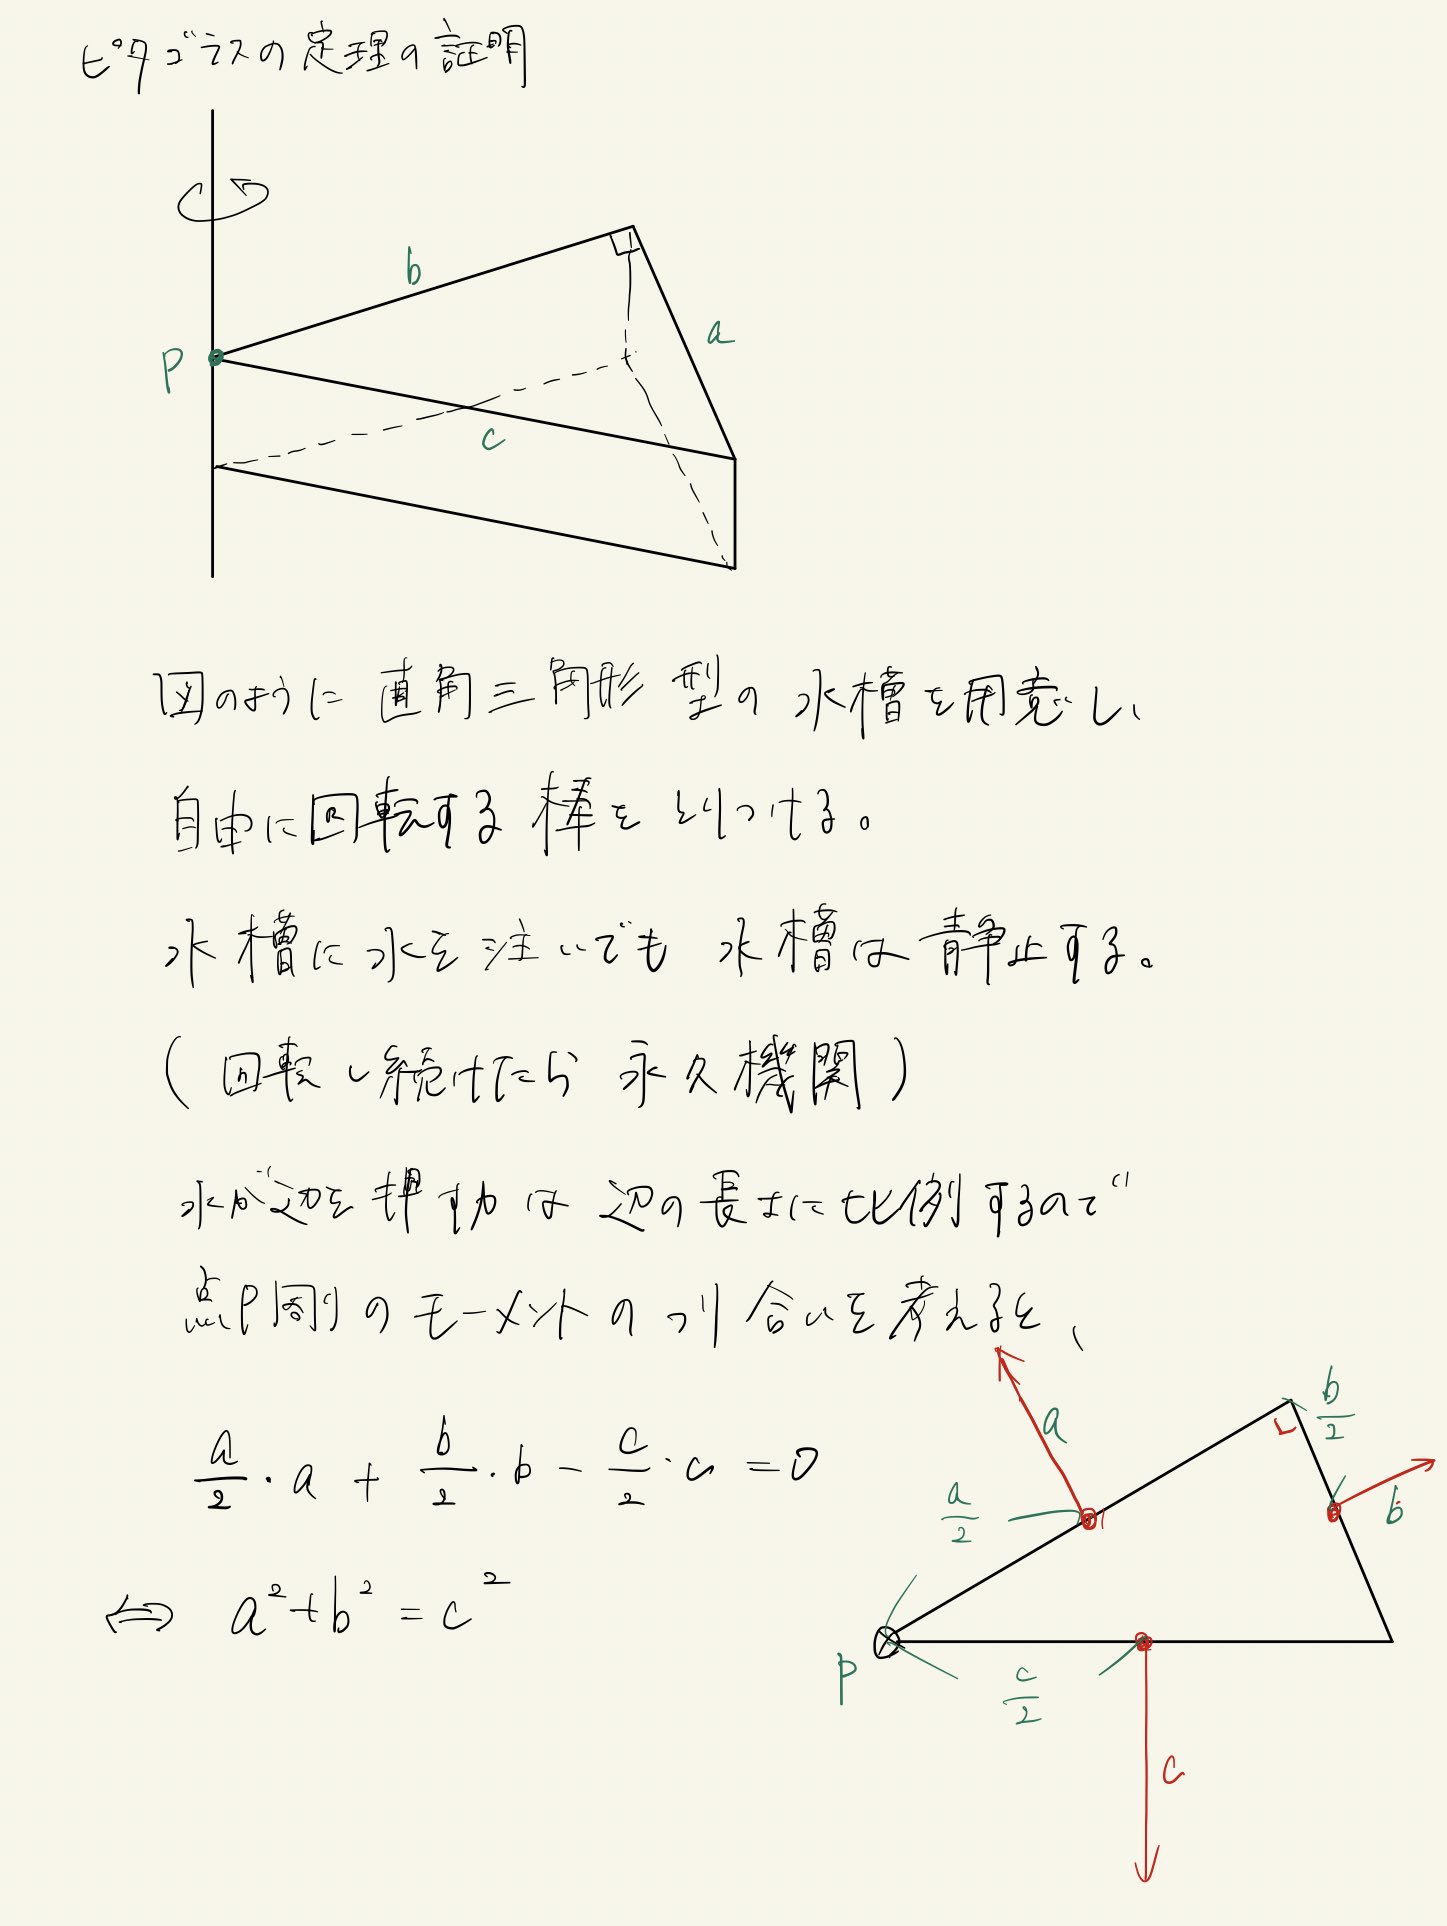 数学を愛する会 三平方の定理の証明 物理 T Co Wwiir0hyal Twitter